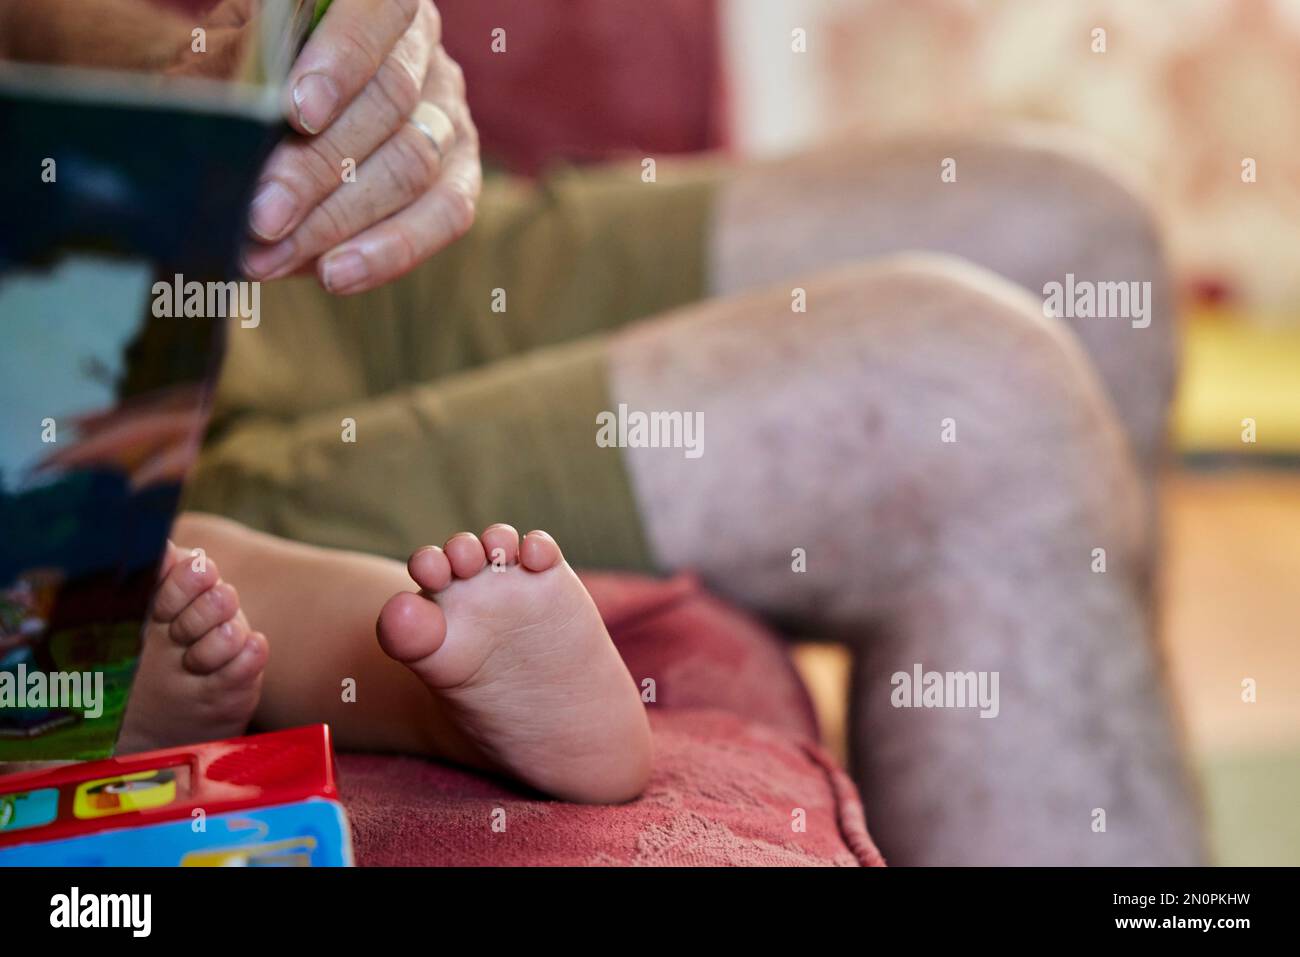 Nahaufnahme des Großvaters, der dem Kleinkind vorliest, Blick auf die barfüßigen Füße und die Knie des Großvaters. Stockfoto